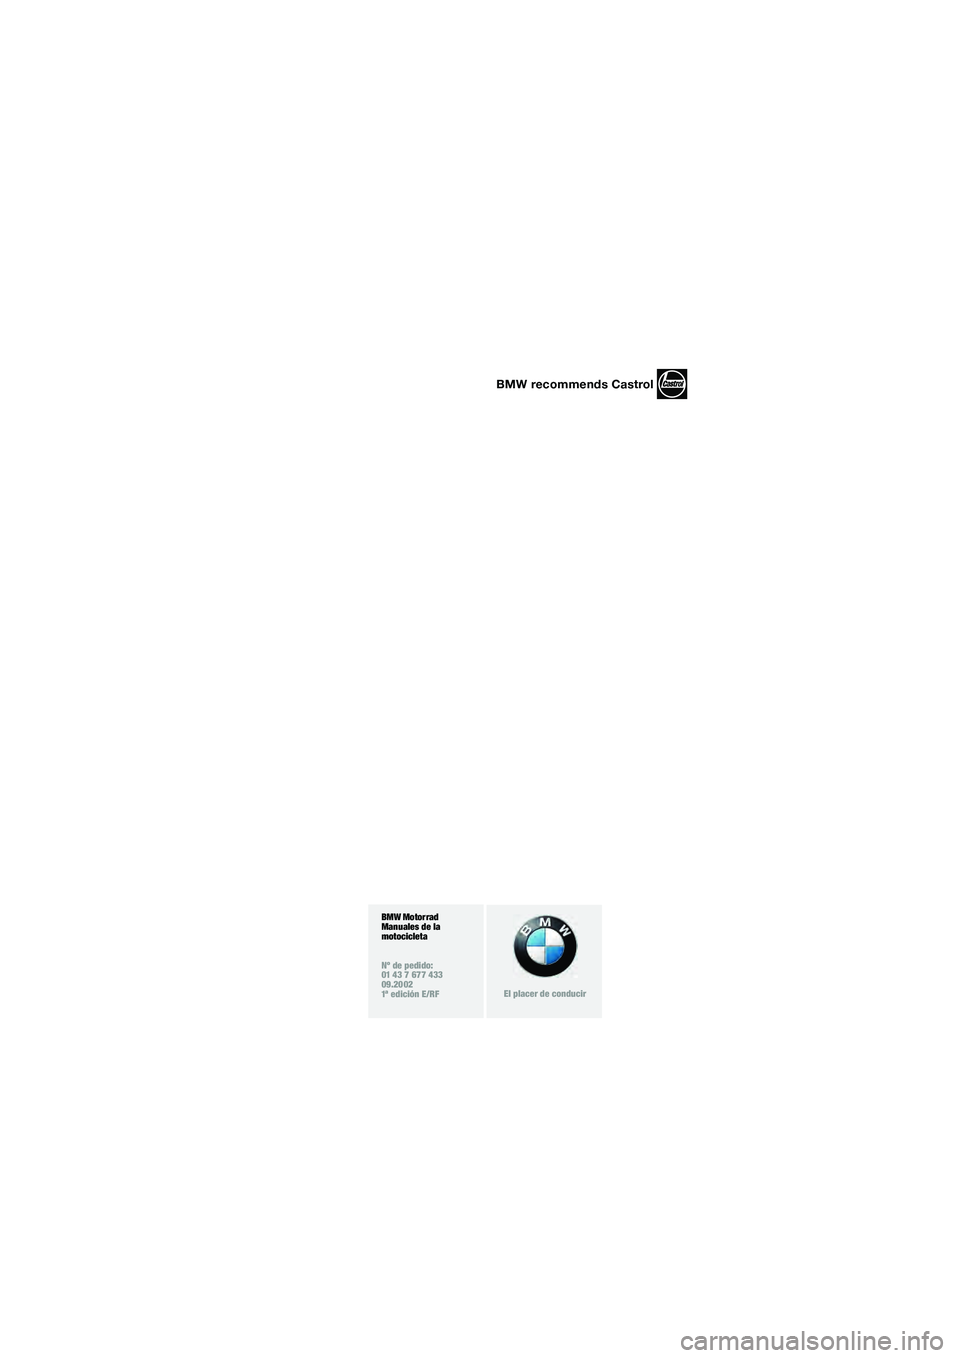 BMW MOTORRAD R 1150 R 2002  Manual de instrucciones (in Spanish) 1
BMW Motorrad
Manuales de la 
motocicleta
Nº de pedido:
01 43 7 677 433
09.2002
1ª edición E/RF
El placer de conducir
BMW recommends Castrol
10r28FUNbke1.book  Seite 3  Donnerstag, 26. Januar 2006